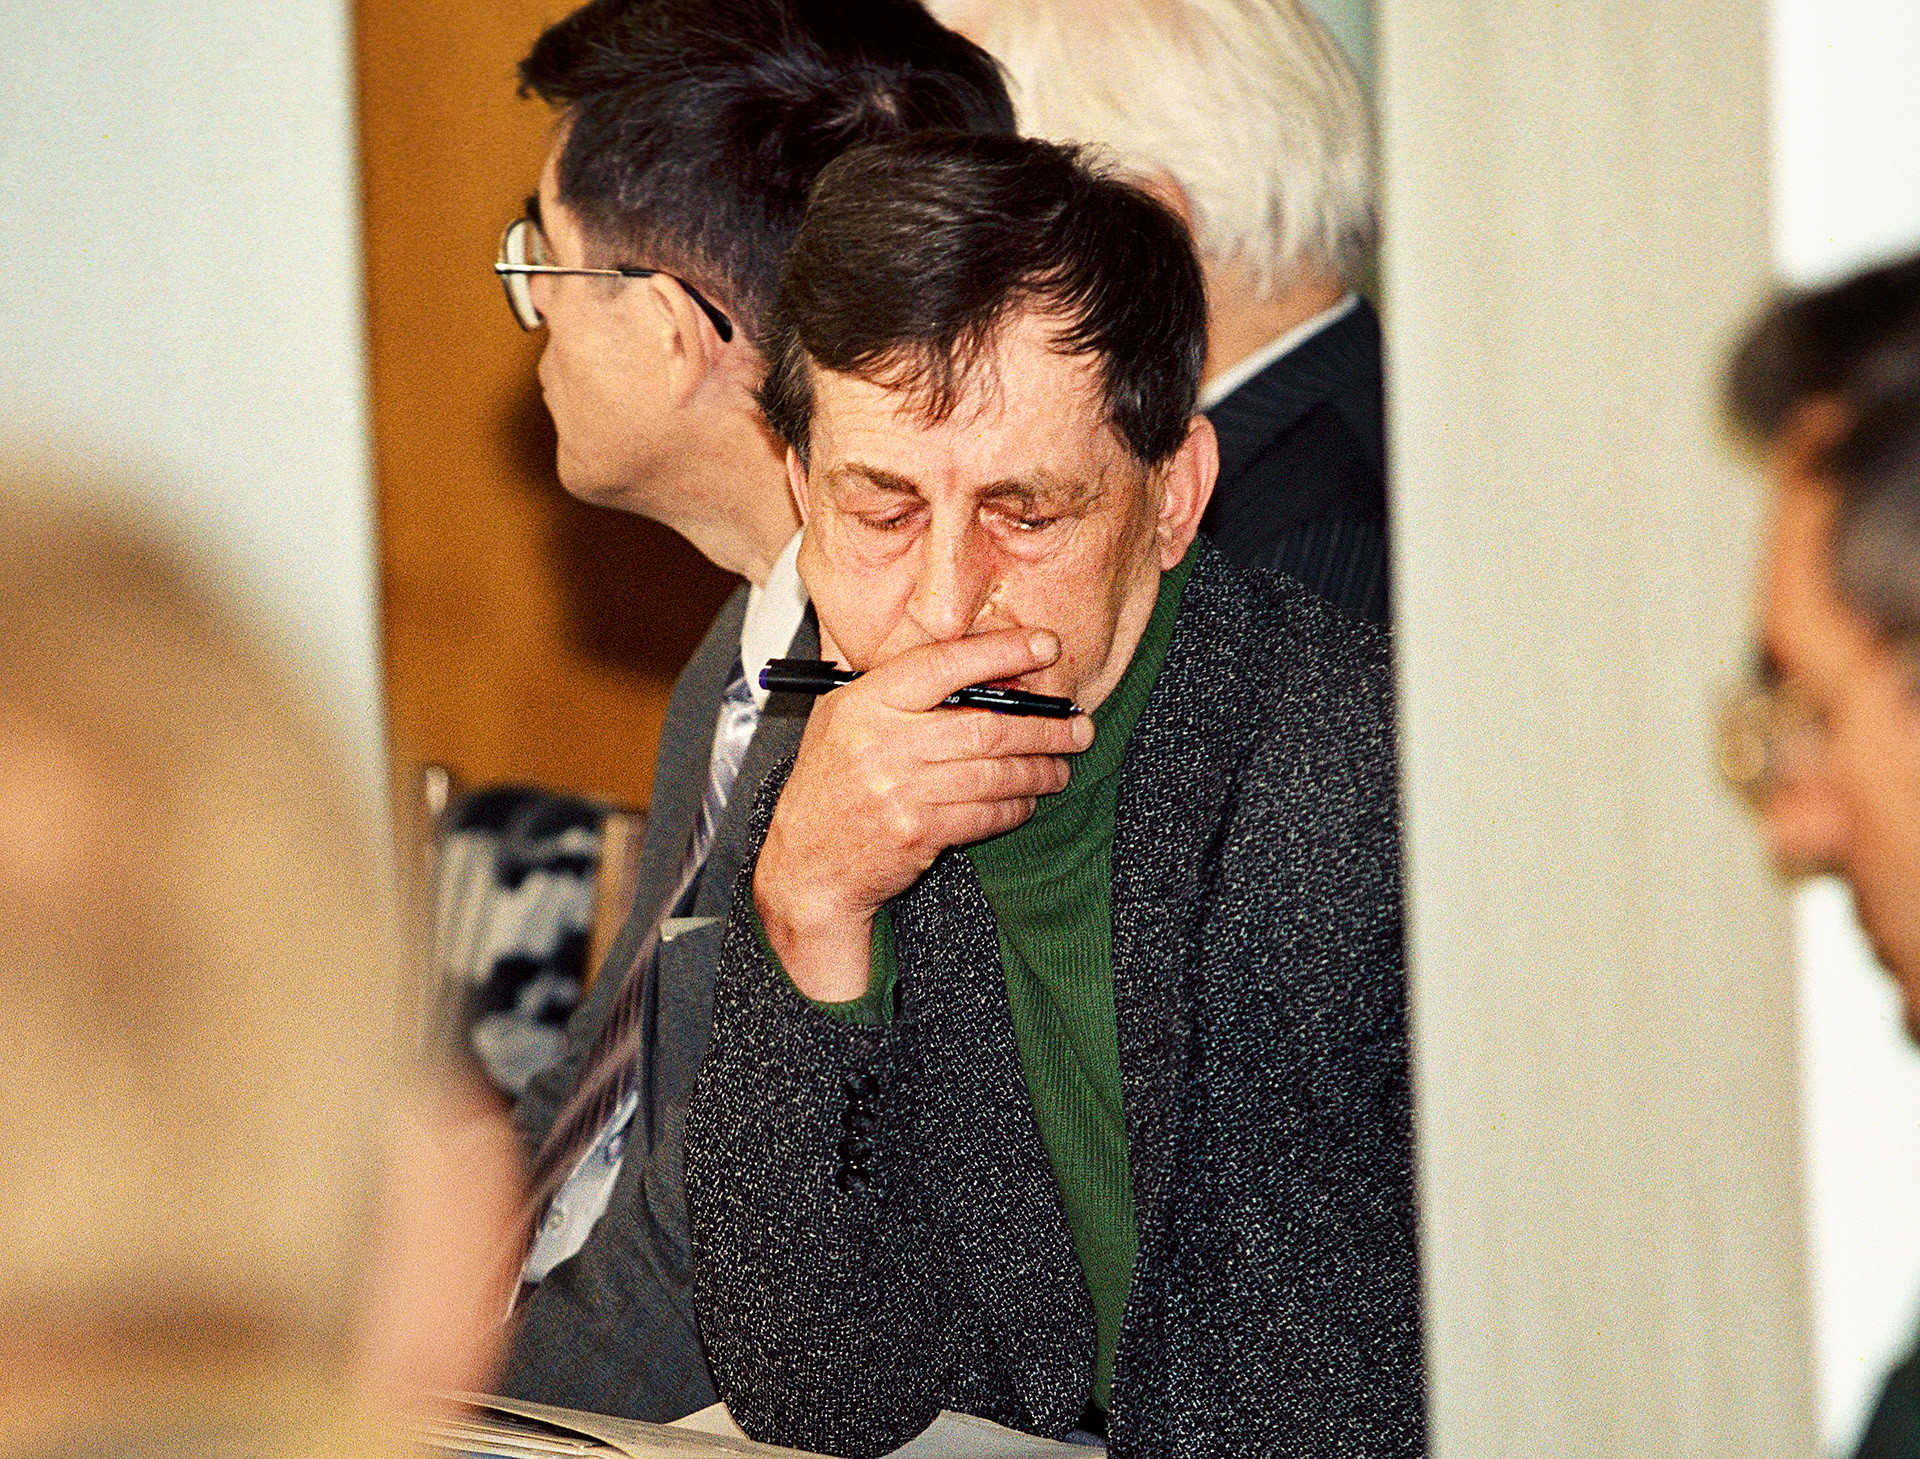 Анатолиј Бугорски, главни координатор експерименталних радова на акцелератору У-70, Институт за физику високих енергија, Протвино. 